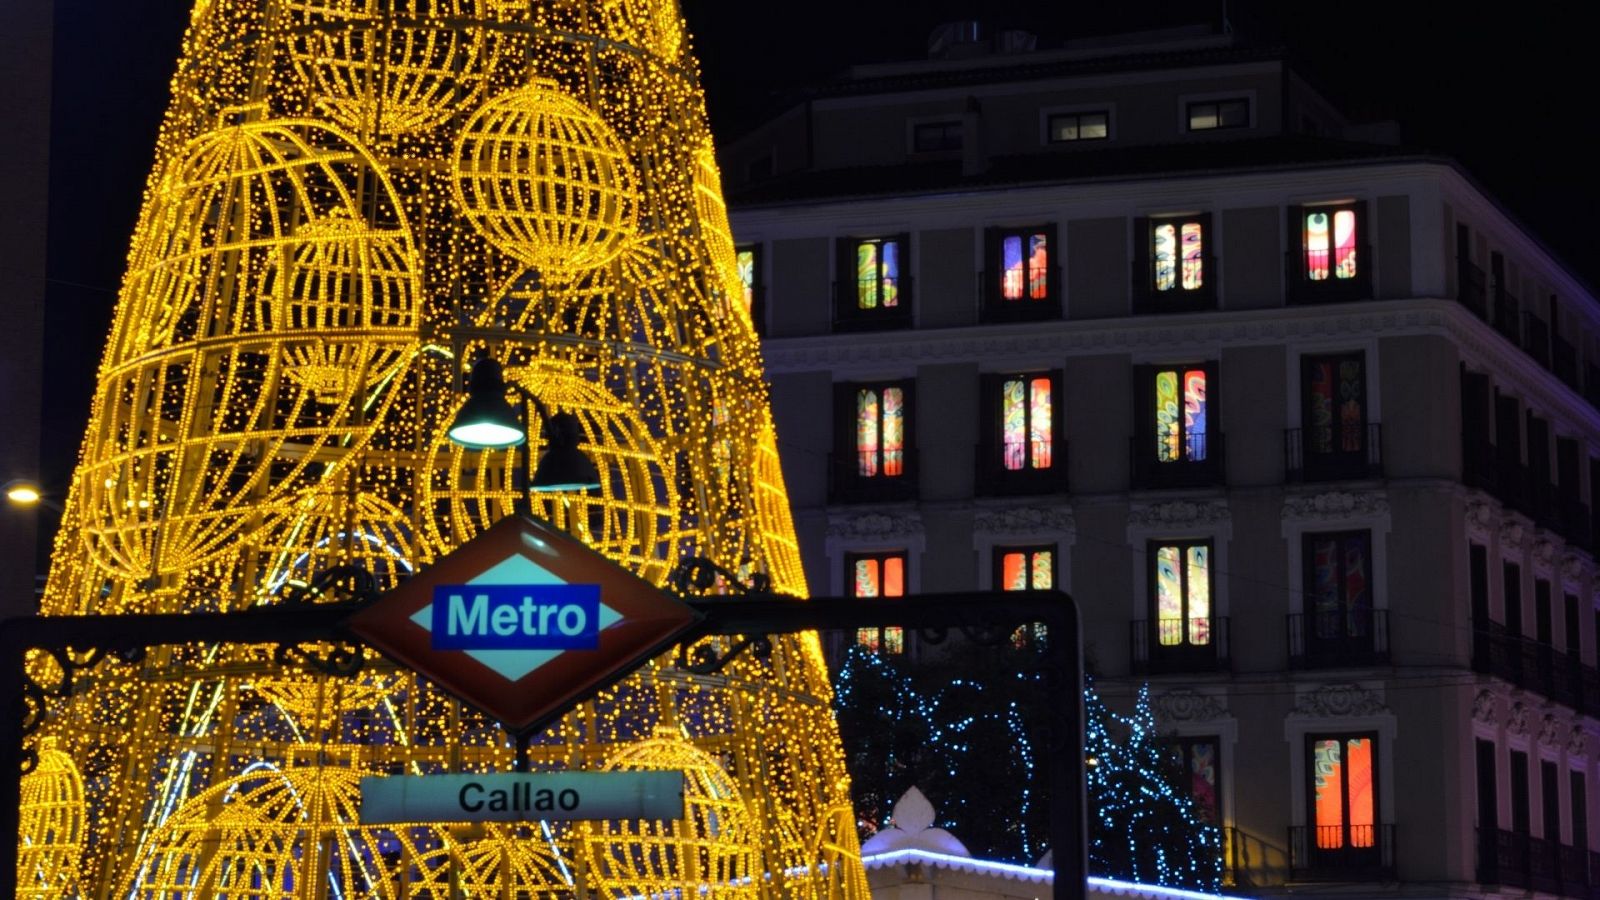 Comprar lotería en Madrid en Navidad, visita obligada